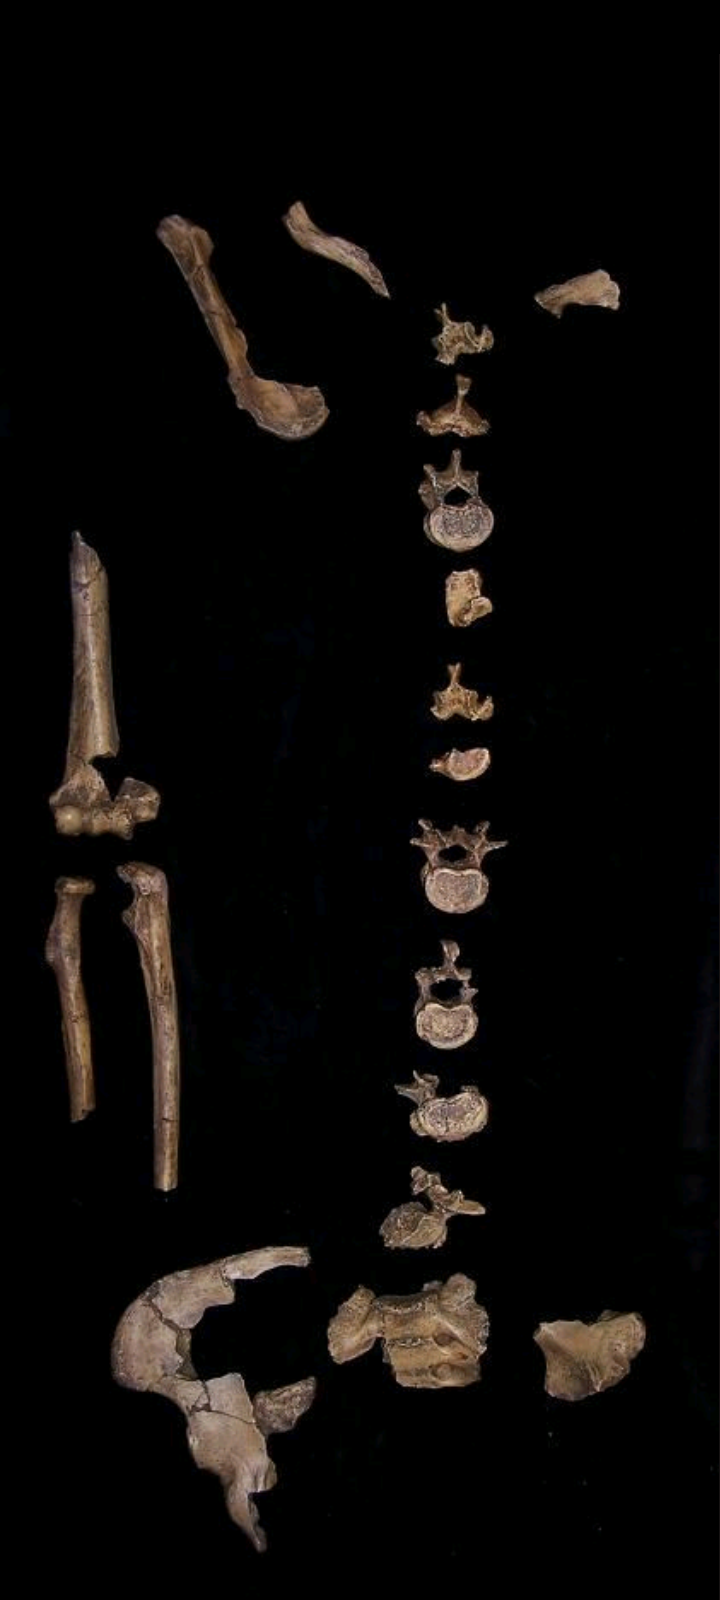 Australopithecus africanus STW 431 Skeleton cast replica Full-size cast